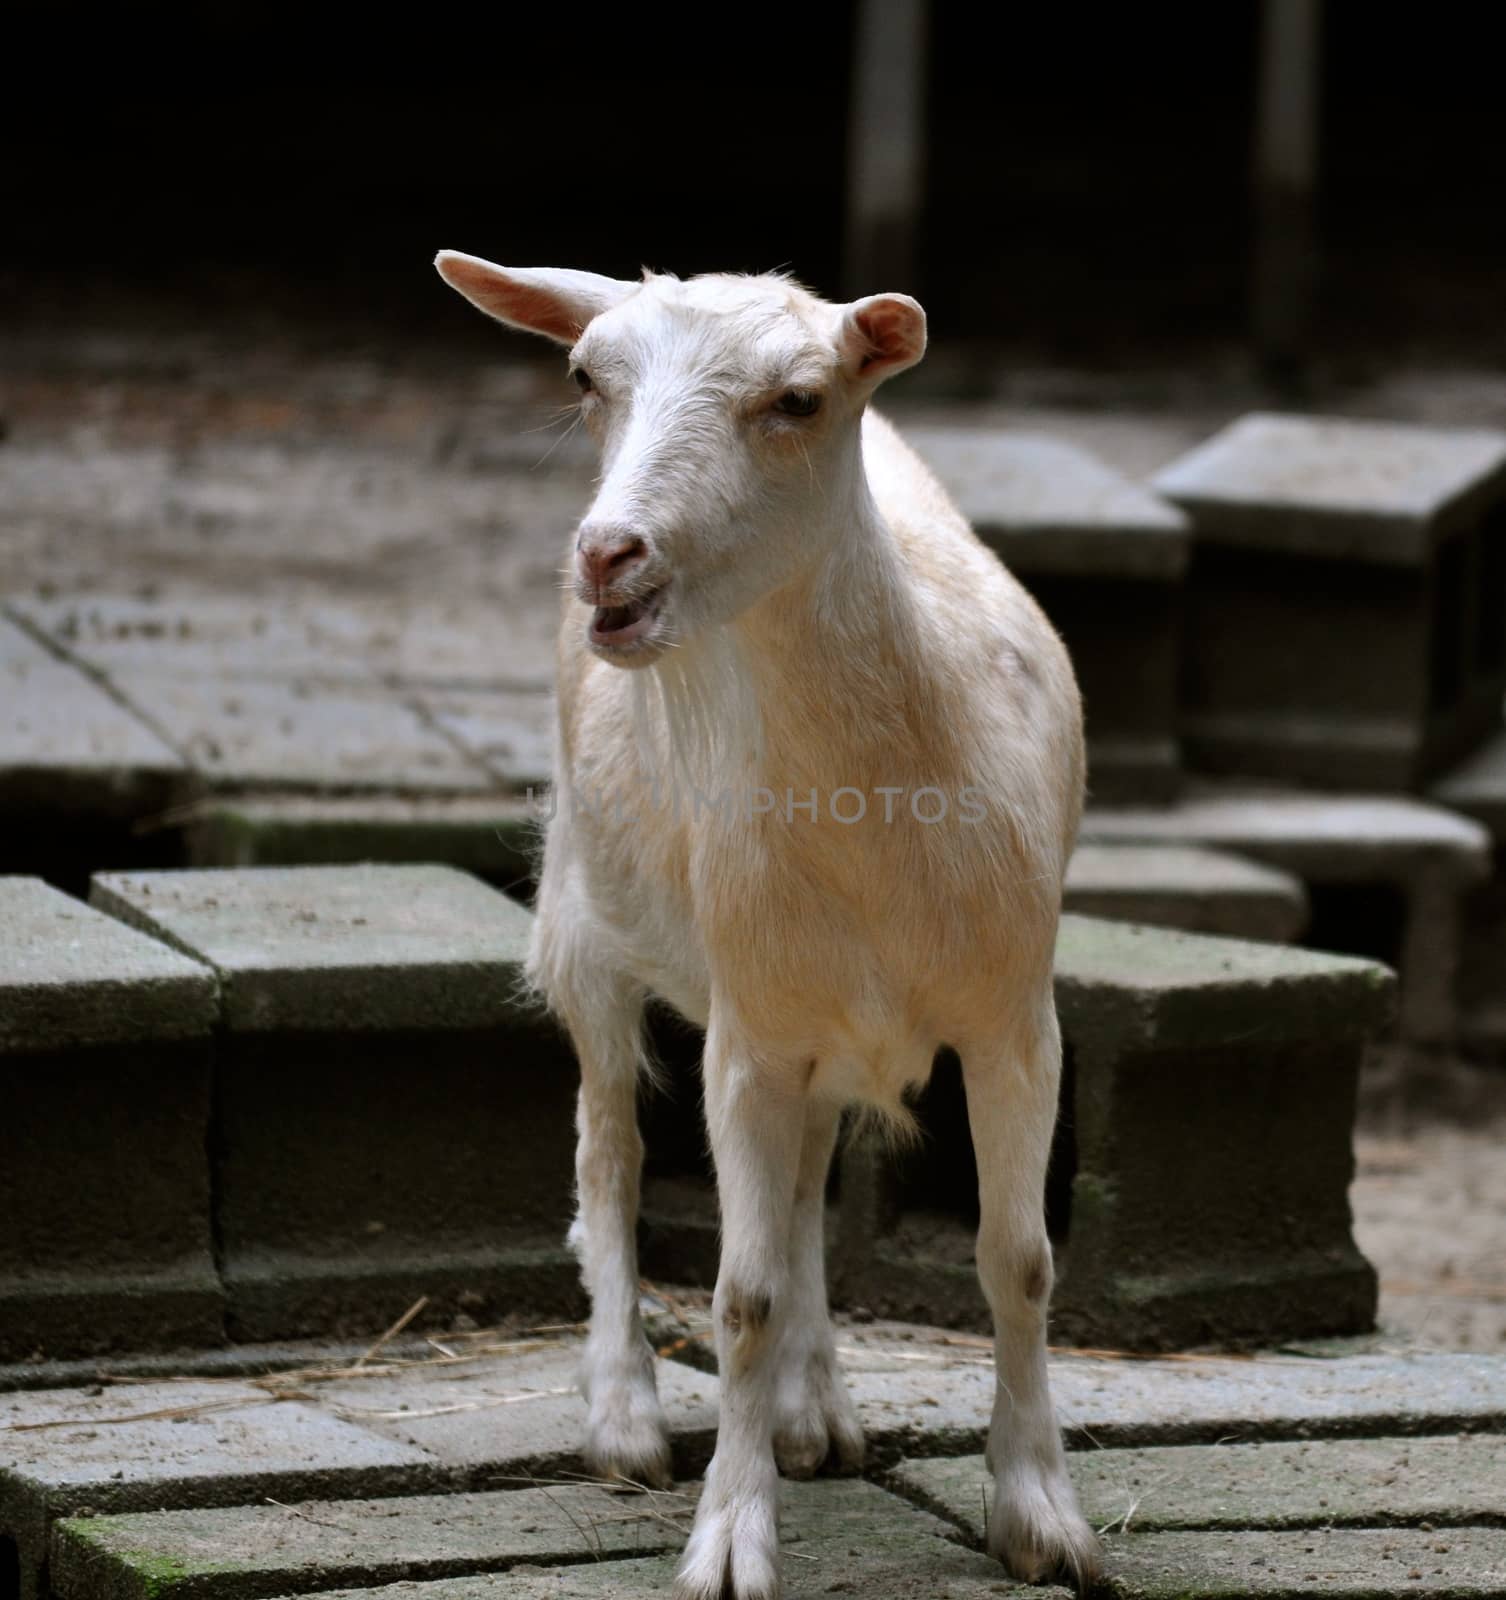 Goat speaks